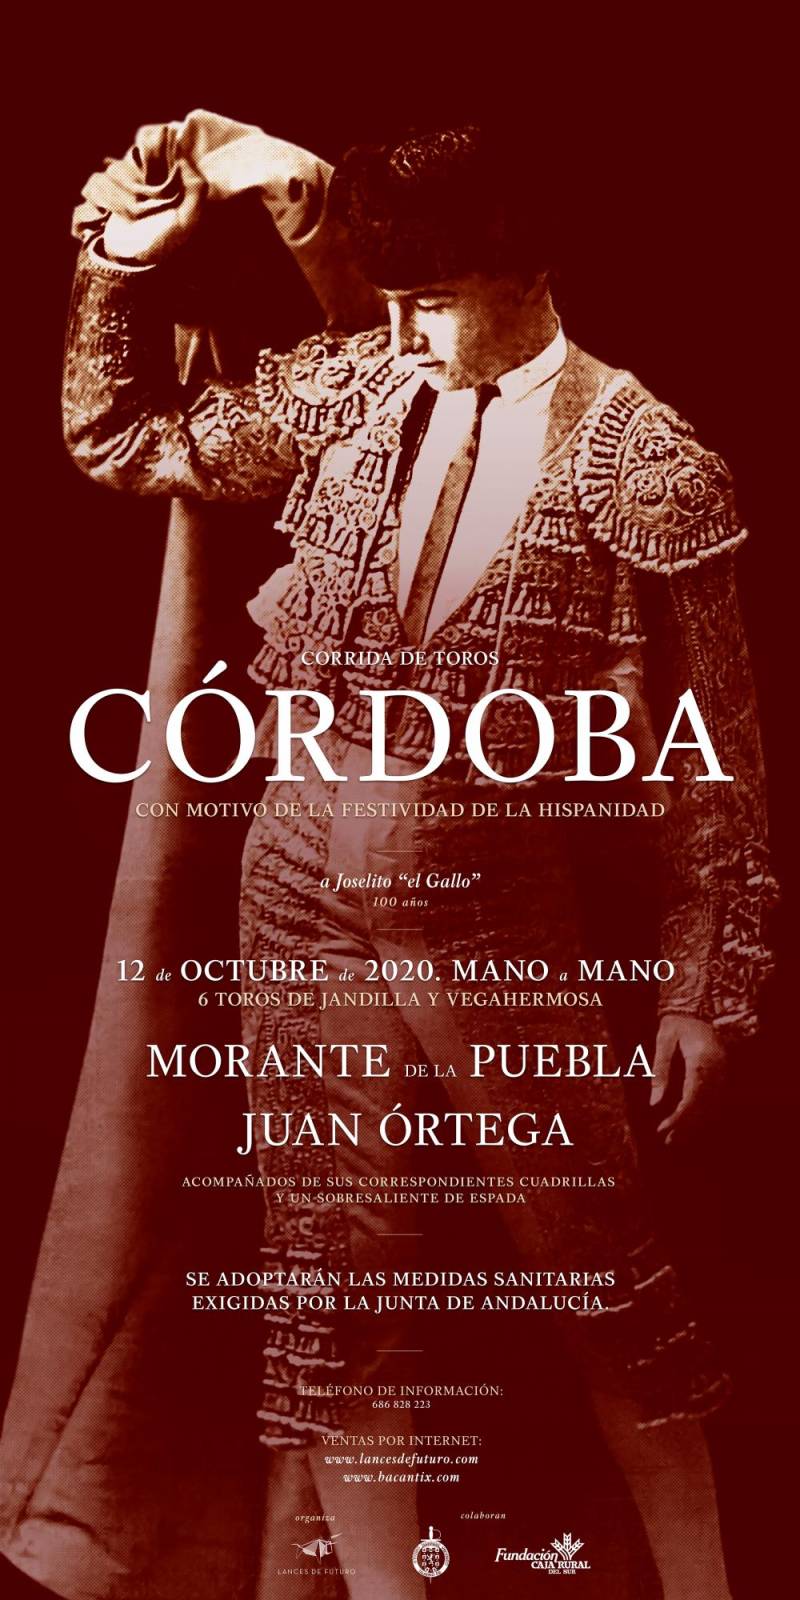 Morante y Juan Ortega, mano a mano de altura en Córdoba